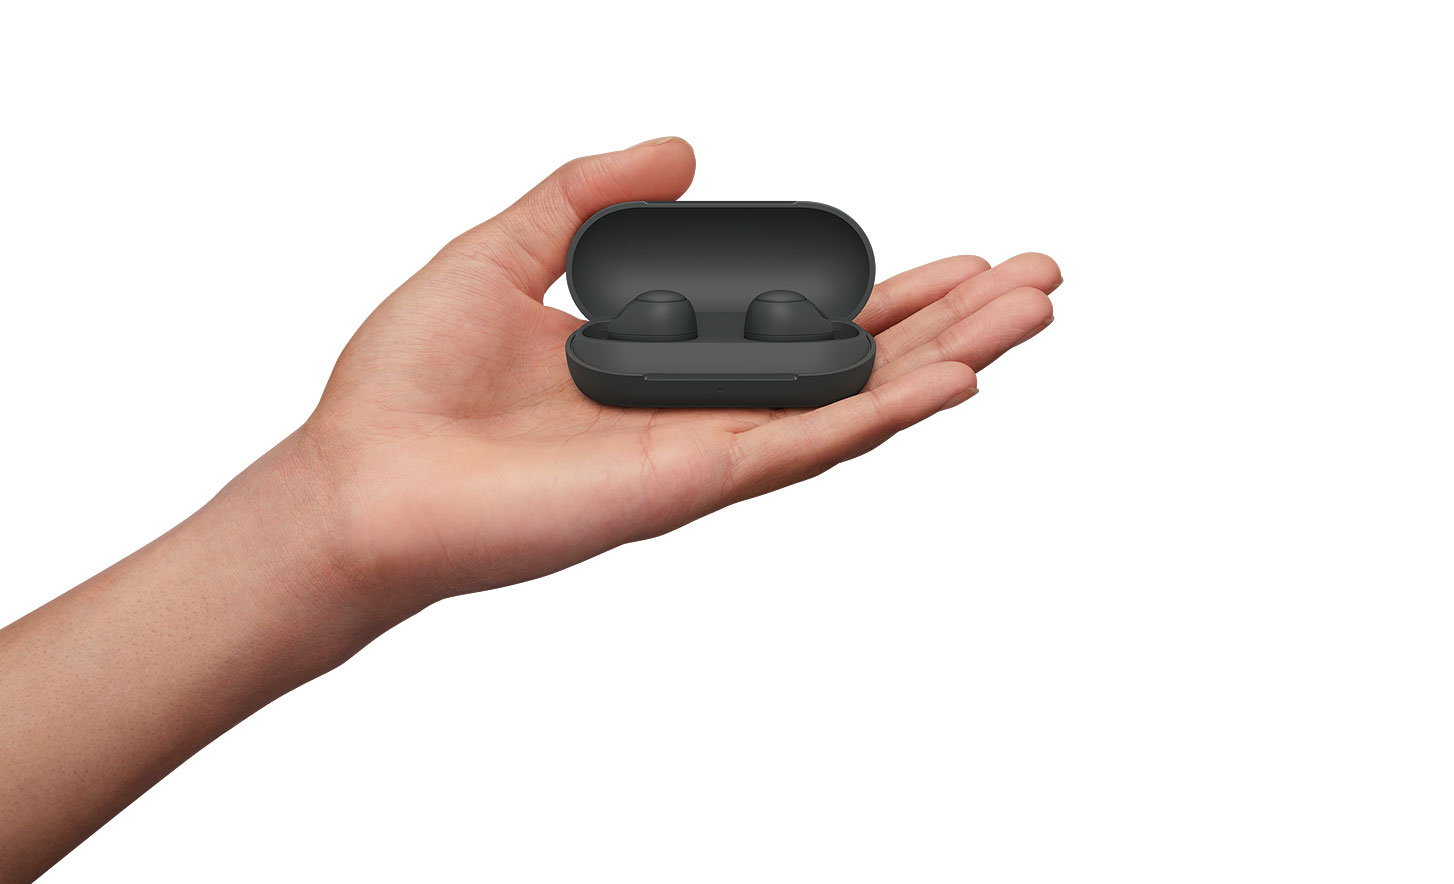 תמונה של יד מחזיקה זוג שחור של אוזניות אלחוטיות עם ביטול רעשים WF-C700N במארז שלהן